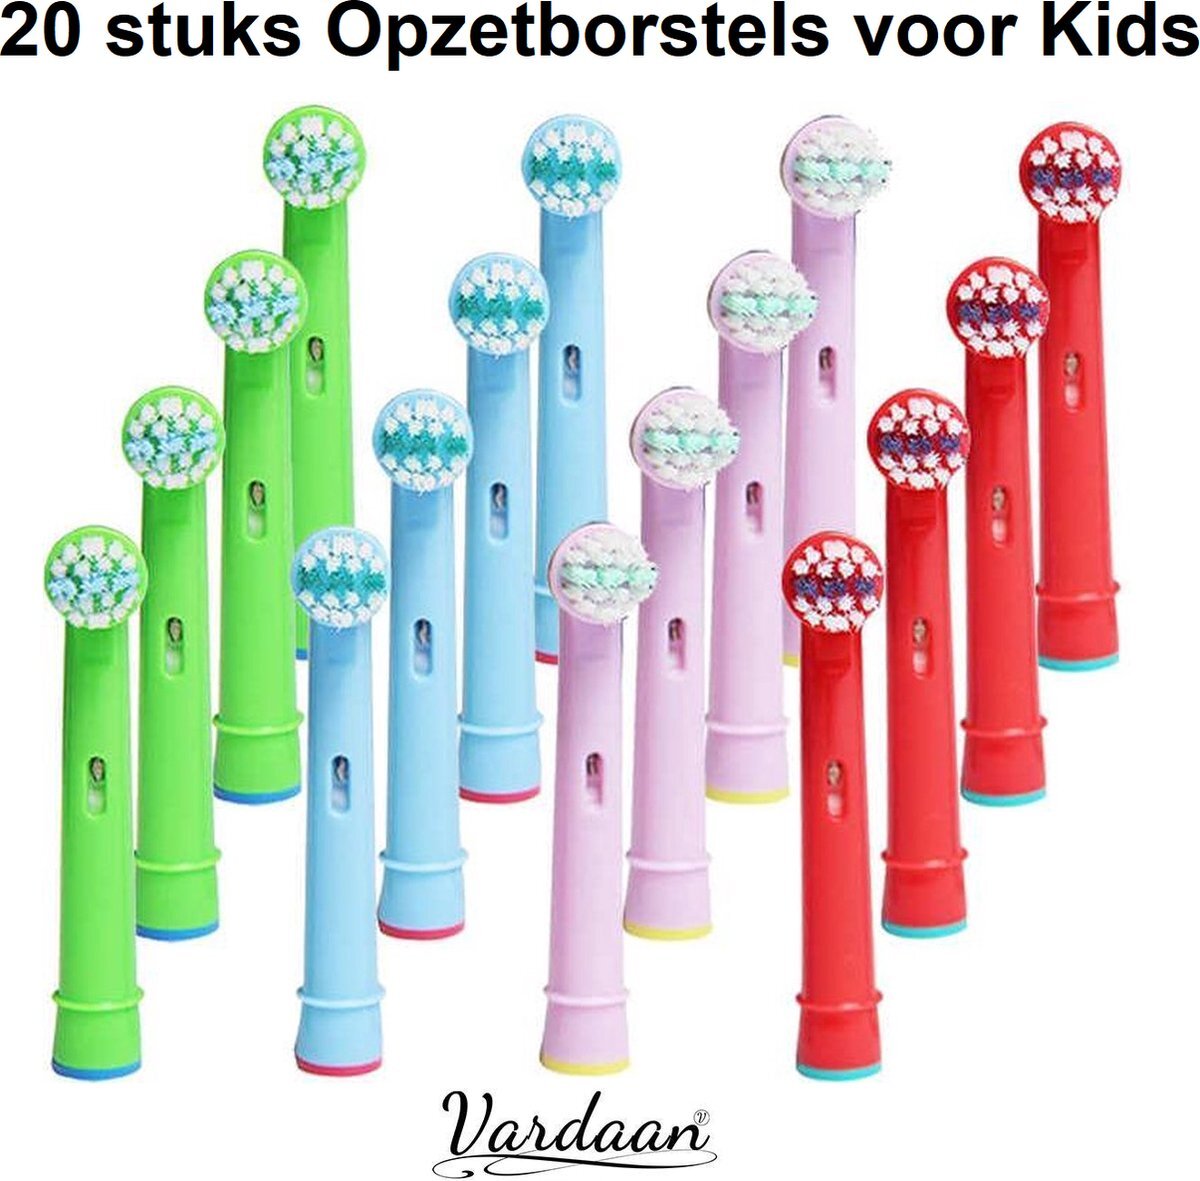 Vardaan EB-10A Opzetborstels Voor Kids - 20 stuks Opzetborstel Voor Elektrische Tandenborstels - Oral-B - Zachte Borstelharen - Junior Elektrische Tandenborstel - Mondhygiëne - 20x